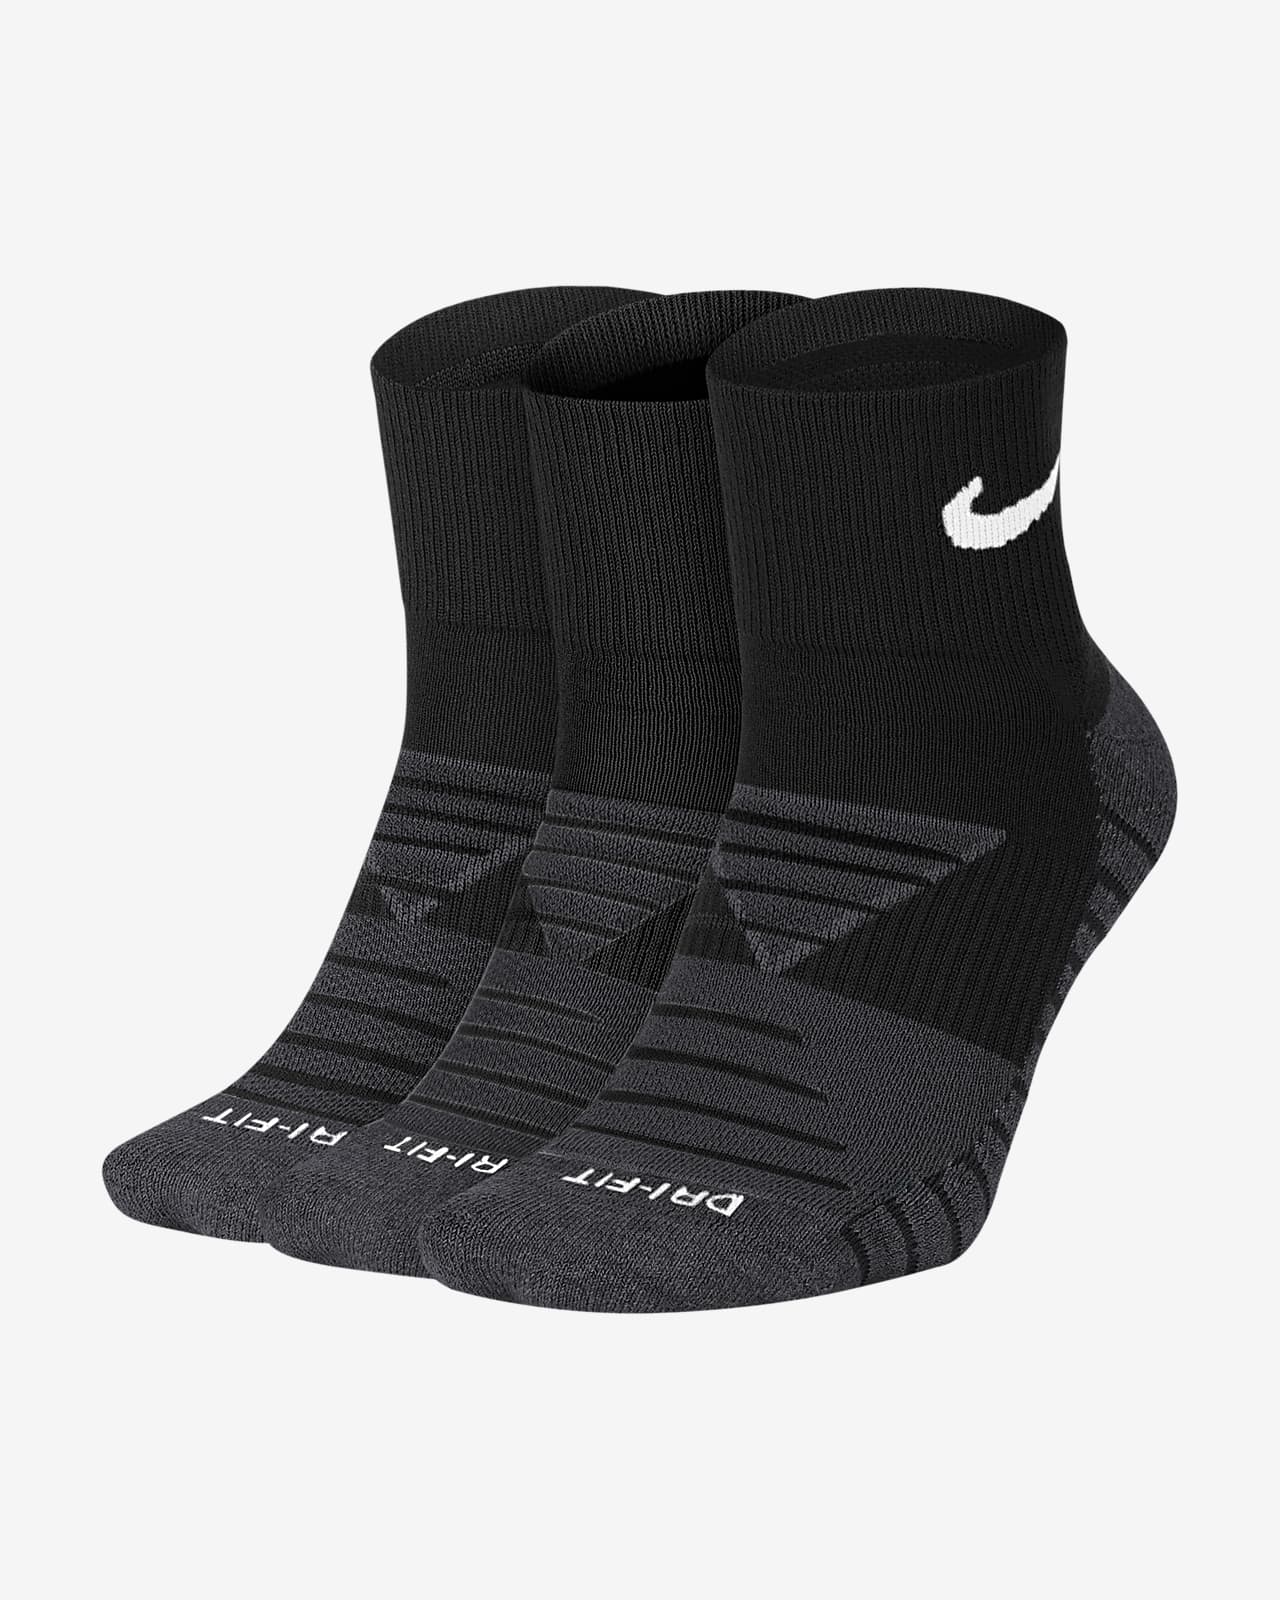 Nike Everyday Max Cushioned Calcetines de entrenamiento hasta el tobillo (3 pares)